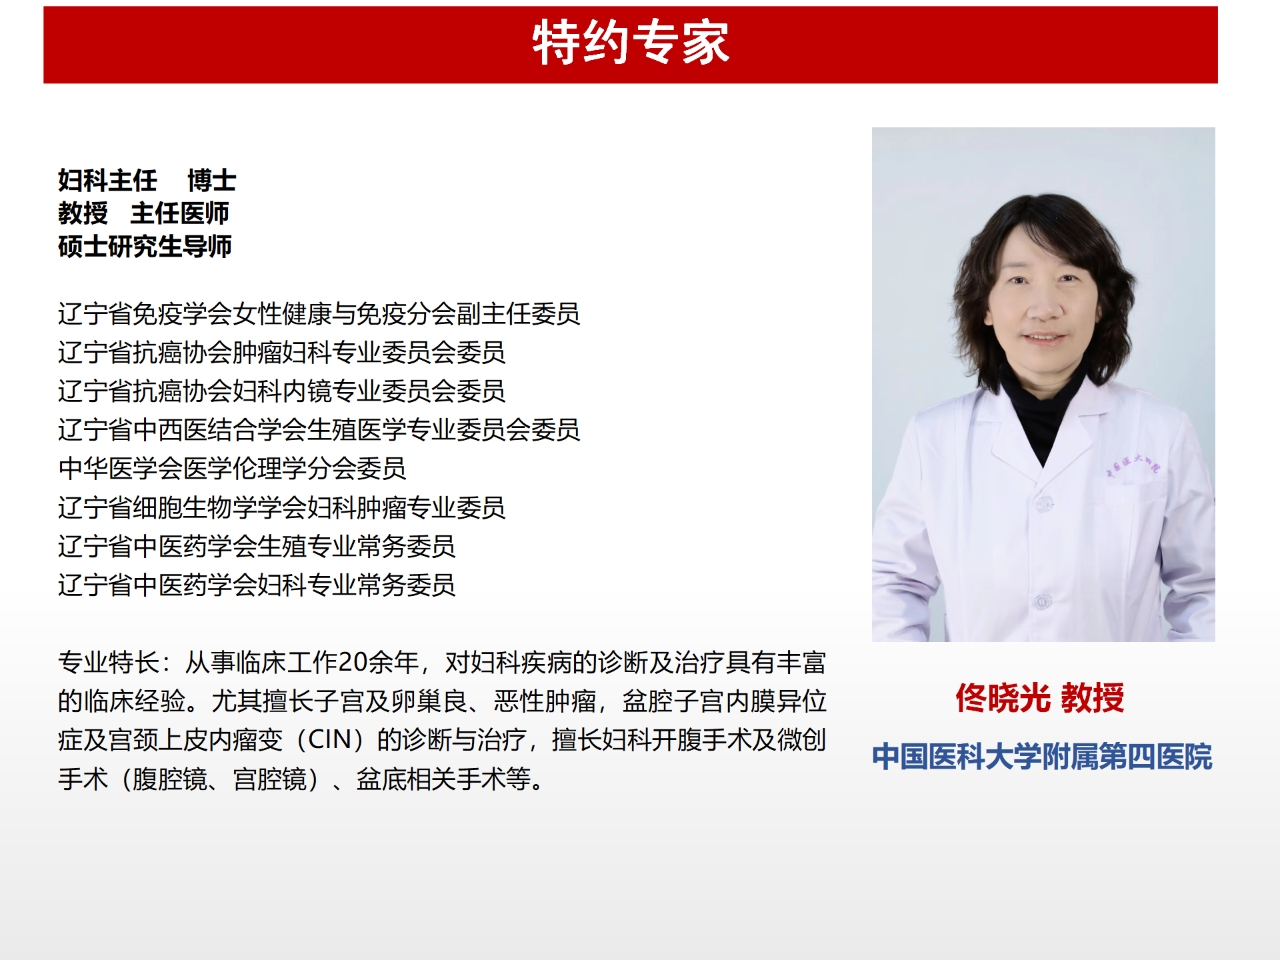 佟晓光<font color="red">教授</font>谈卓越妇科医疗团队的打造